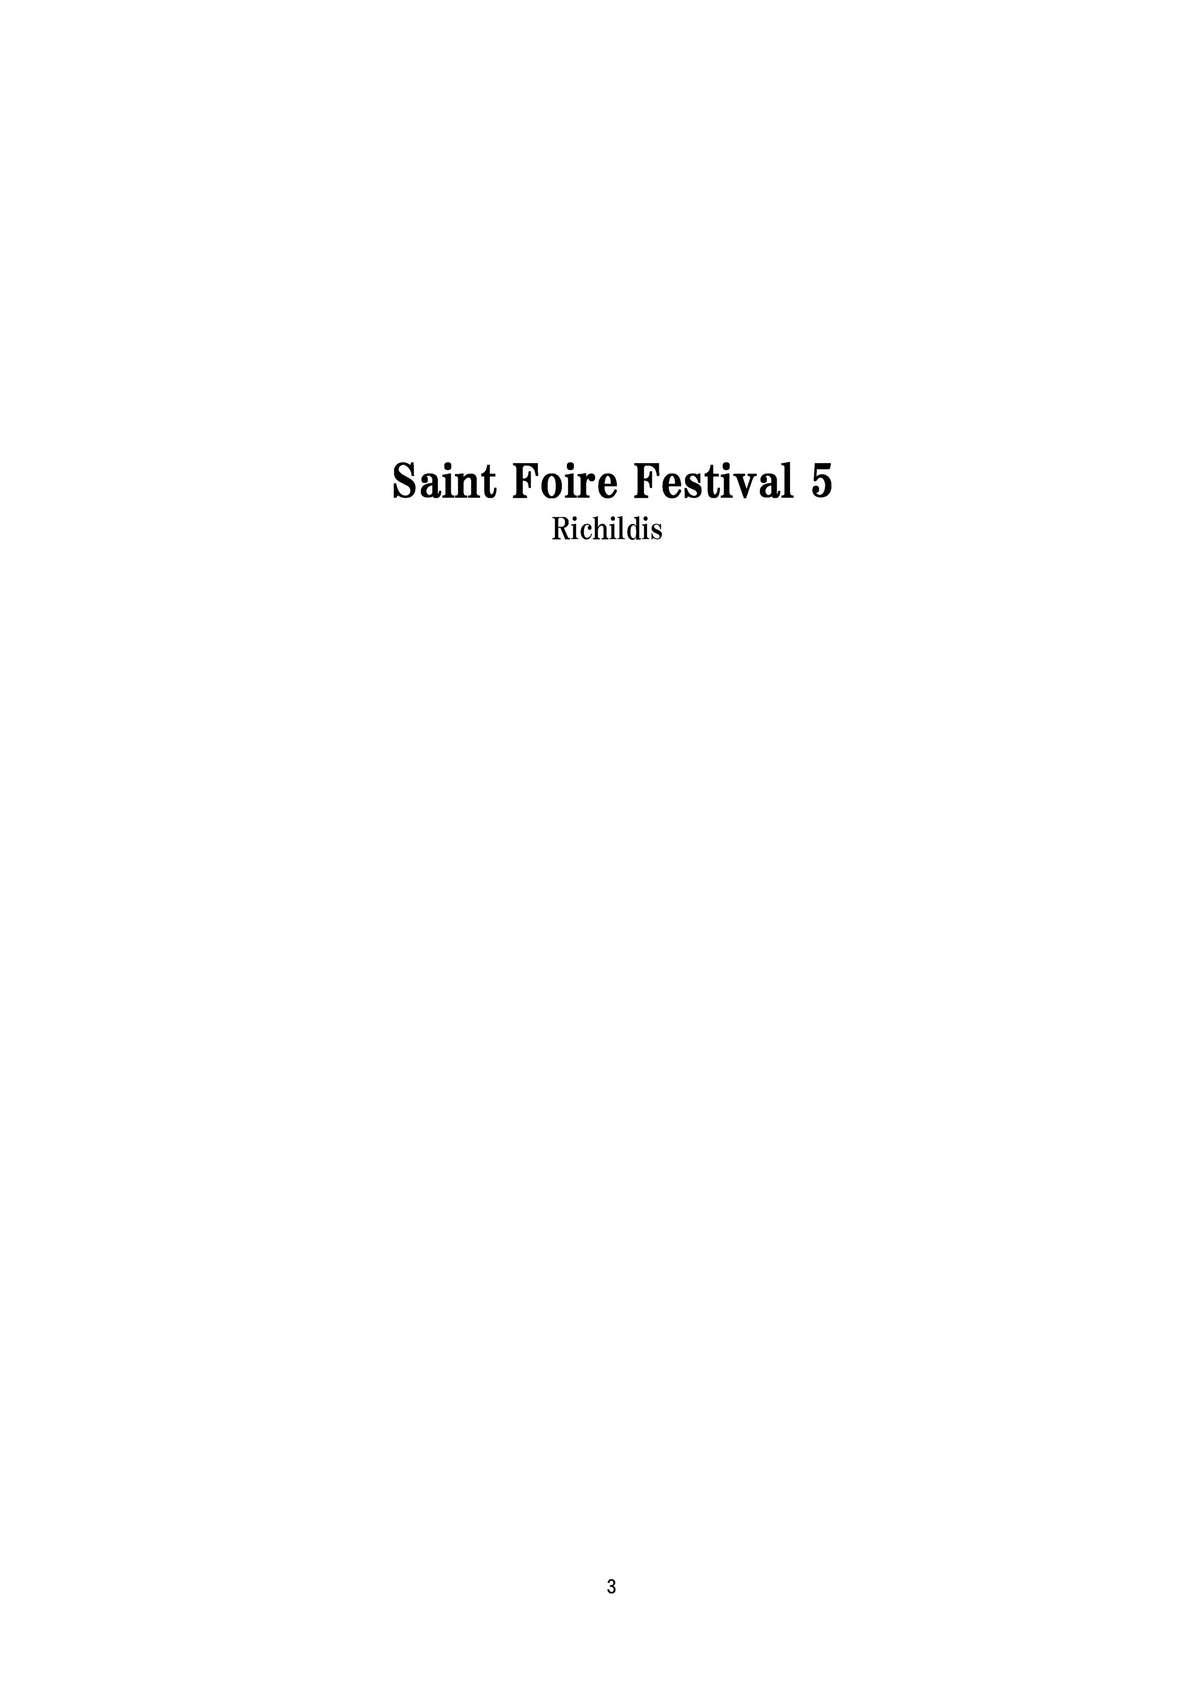 Saint Foire Festival 5 2